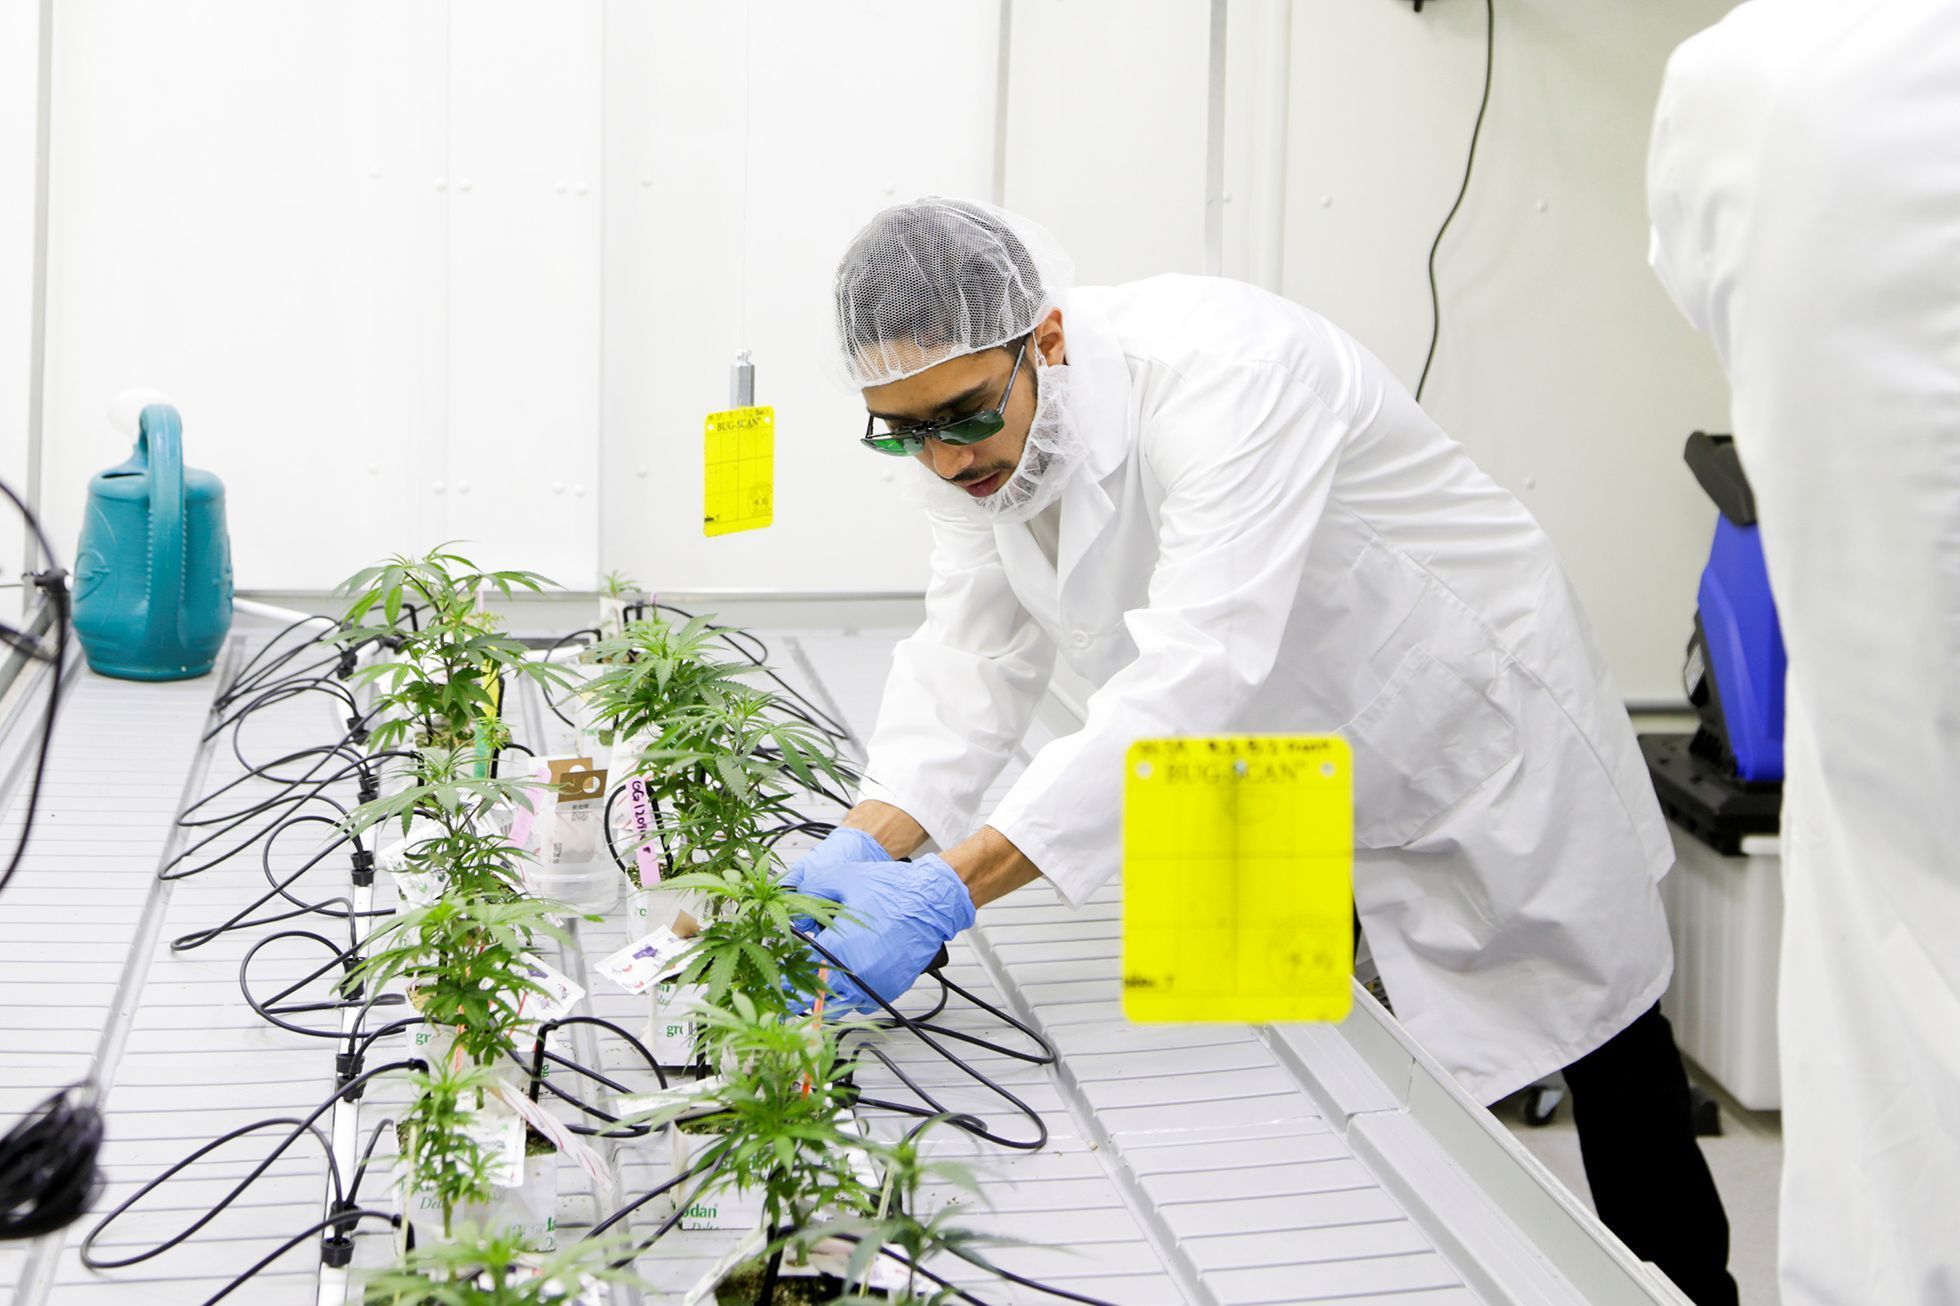 Fotogalerie / Jak se studenti se v Kanadě učí pěstovat marihuanu / Reuters / 2018